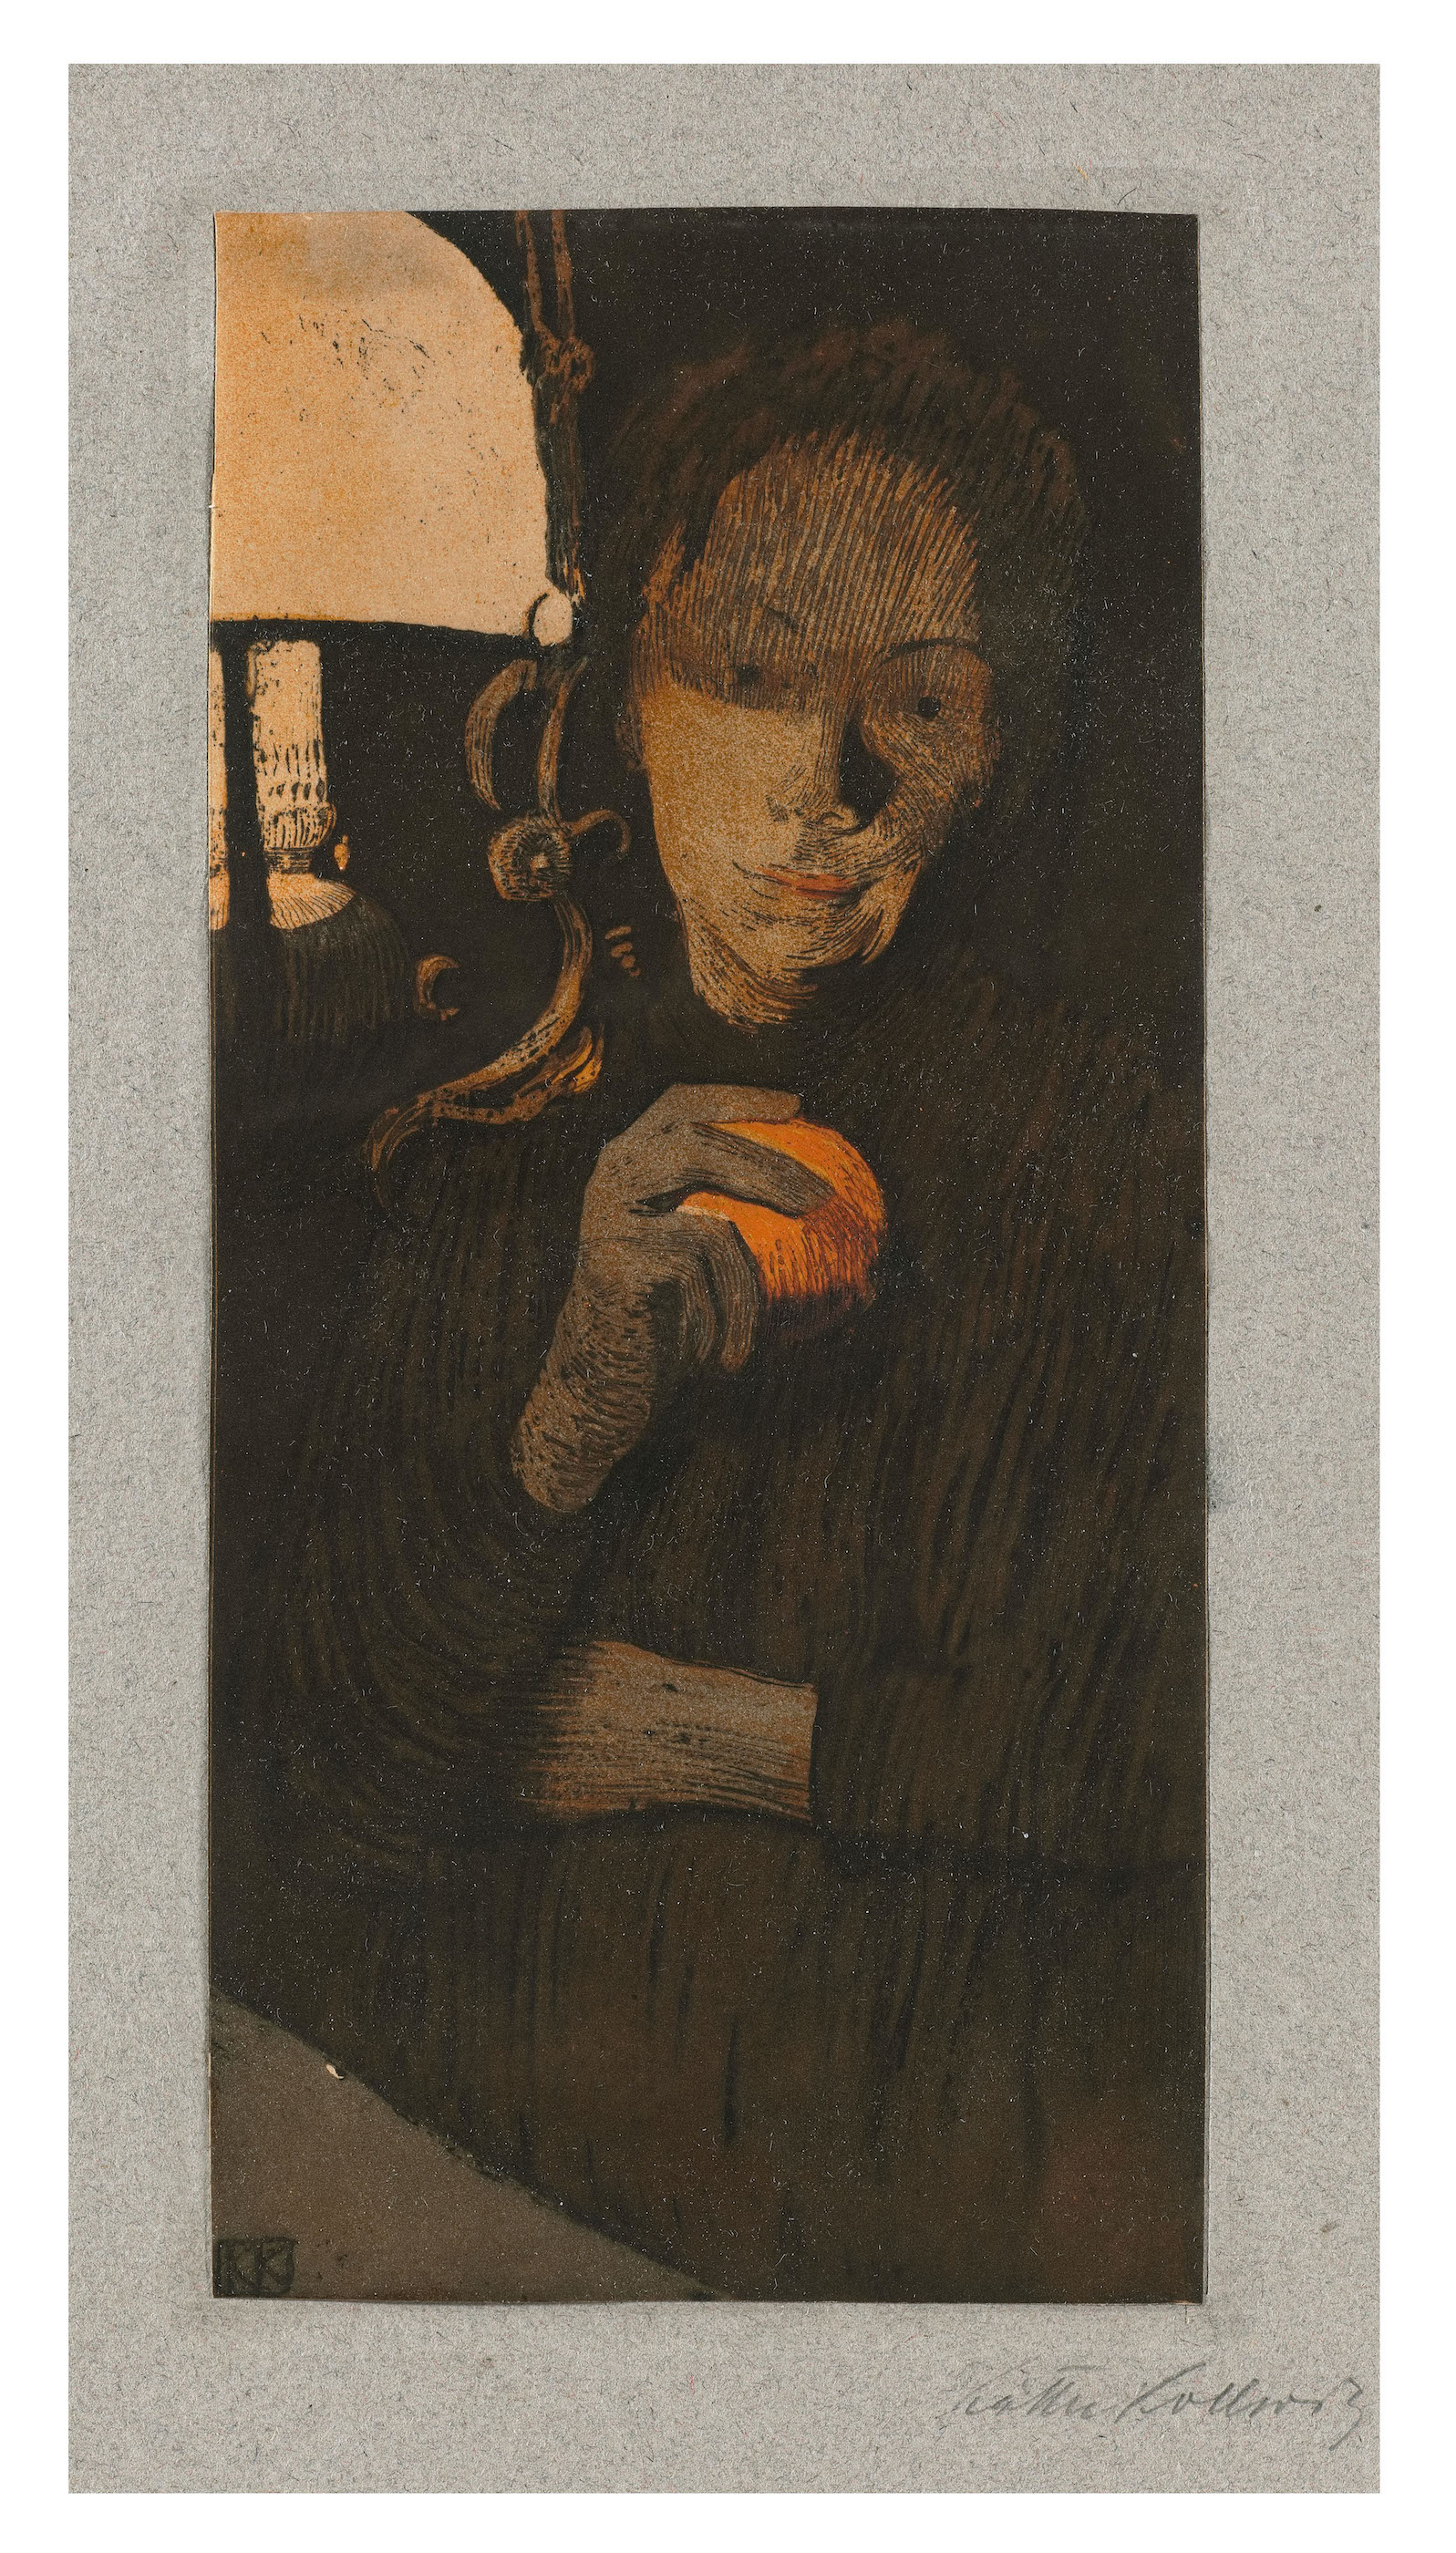 拿著柳橙的女人 by Käthe Kollwitz - 1901年 - 23.1 x 11.2 釐米 